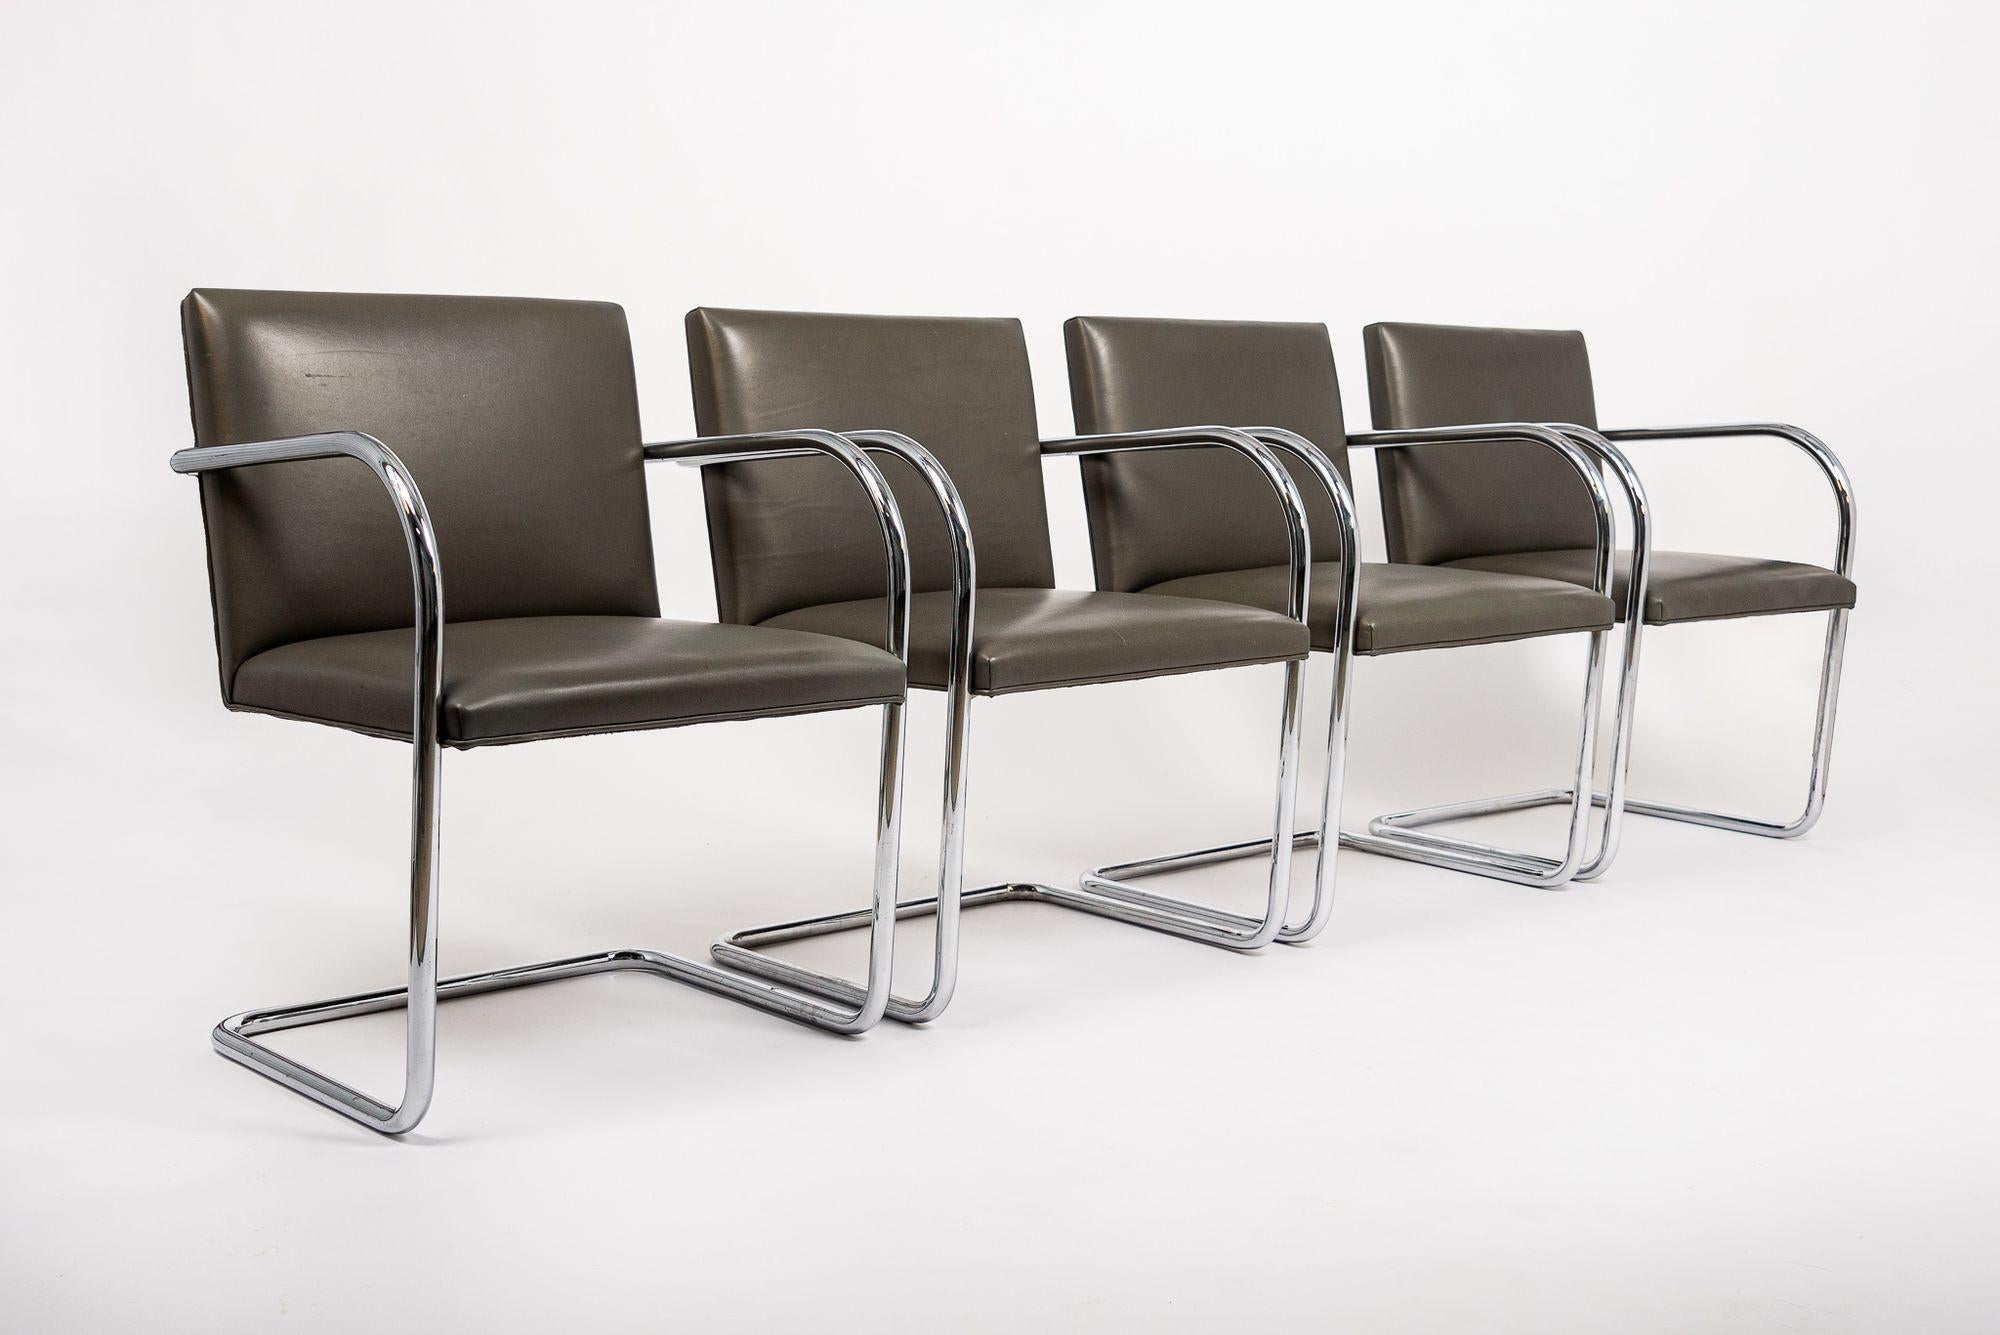 Cet ensemble de quatre (8 disponibles) fauteuils à piétement luge Brno de Mies van der Rohe pour Knoll, datant du milieu du siècle dernier, a été produit en 2002. Ces chaises modernistes emblématiques du Bauhaus, conçues à l'origine par Ludwig Mies